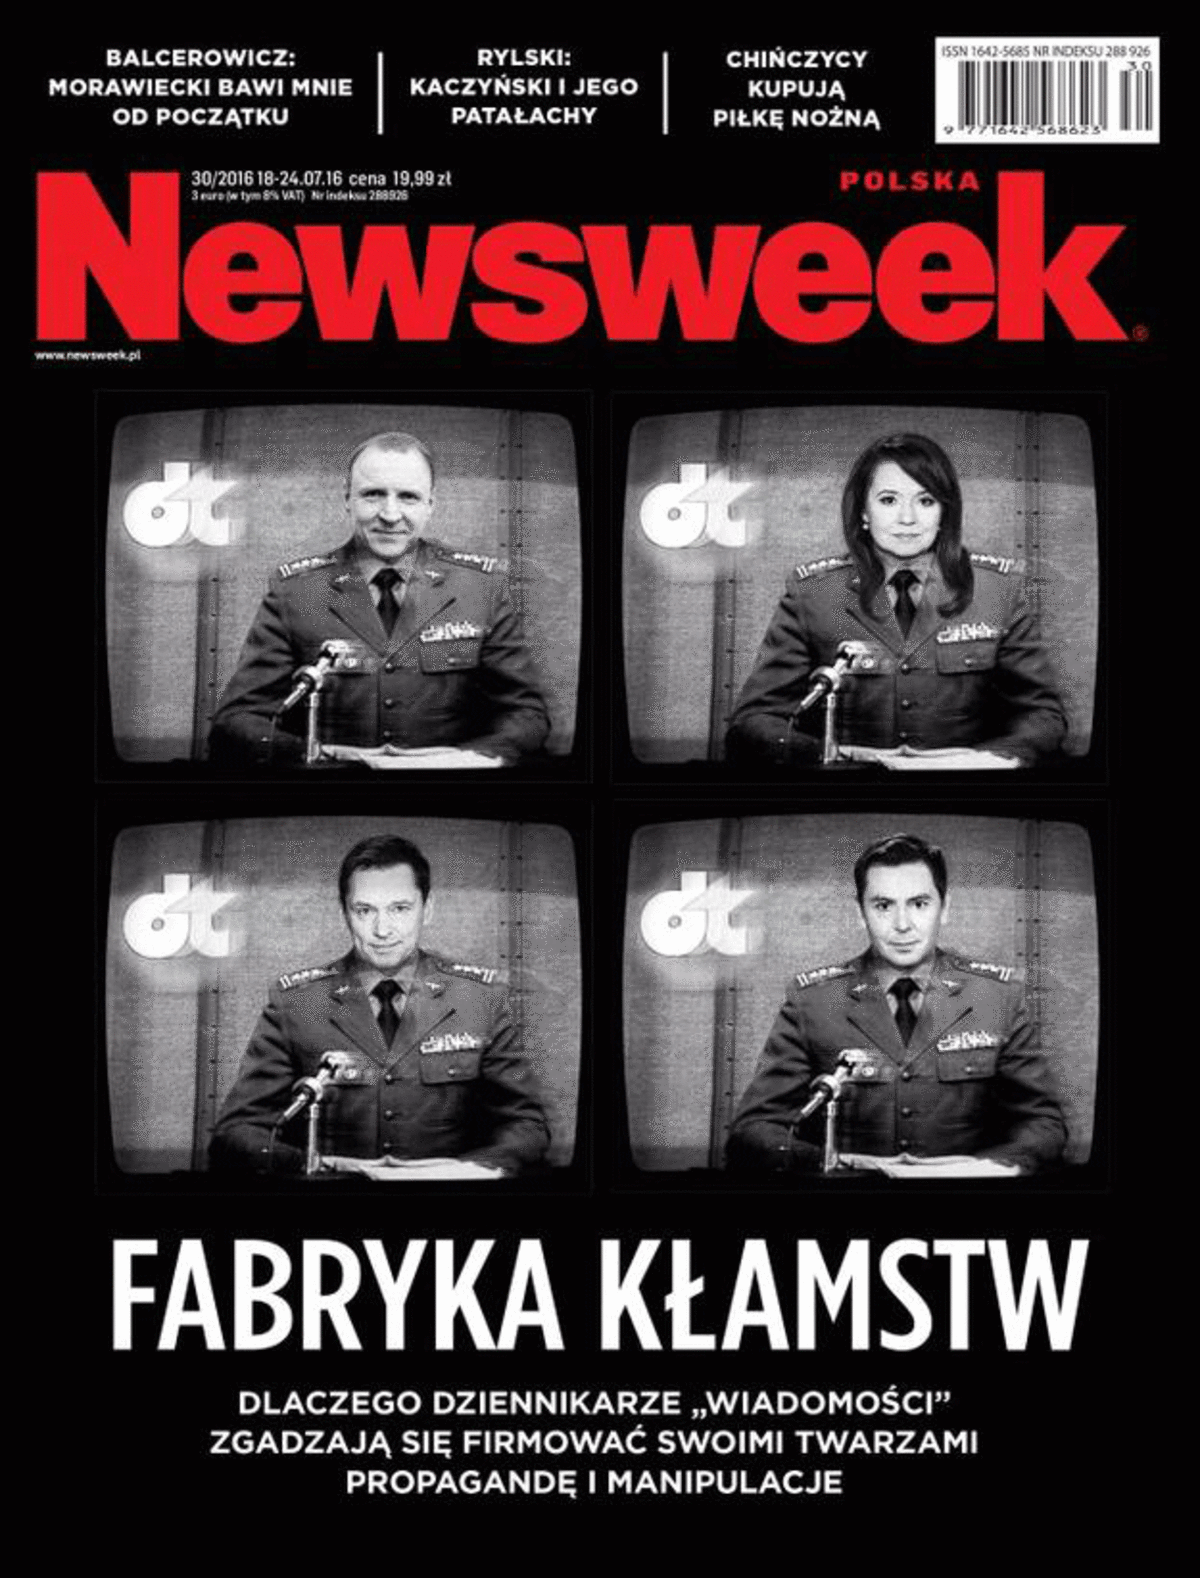 Okładka Newsweek Ziemiec I Kurski Jak Dziennikarze Za Czasów Prl 6986